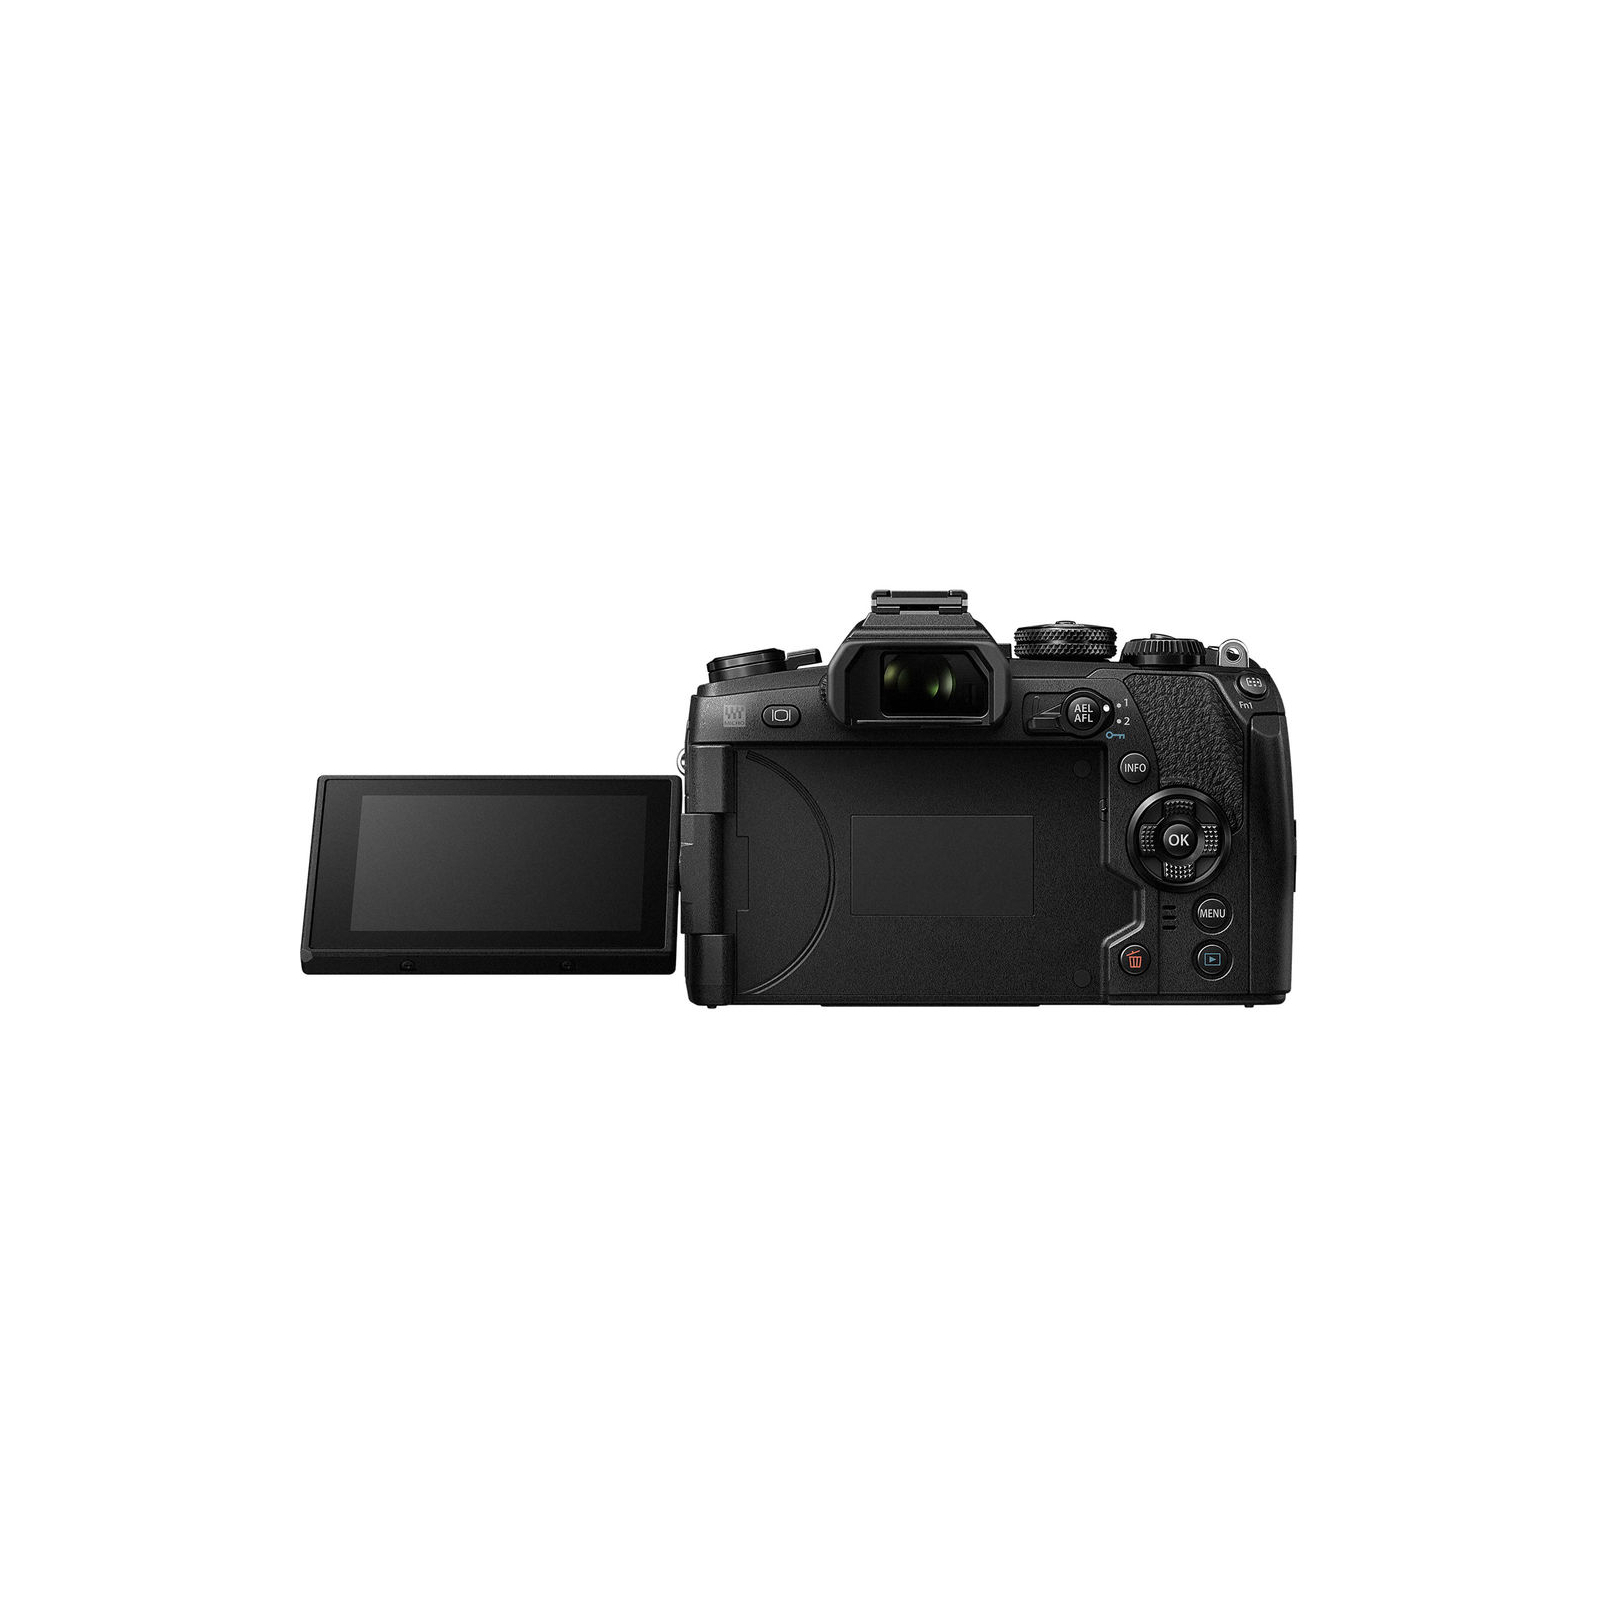 Цифровой фотоаппарат Olympus E-M1 mark II Body black (V207060BE000) изображение 6